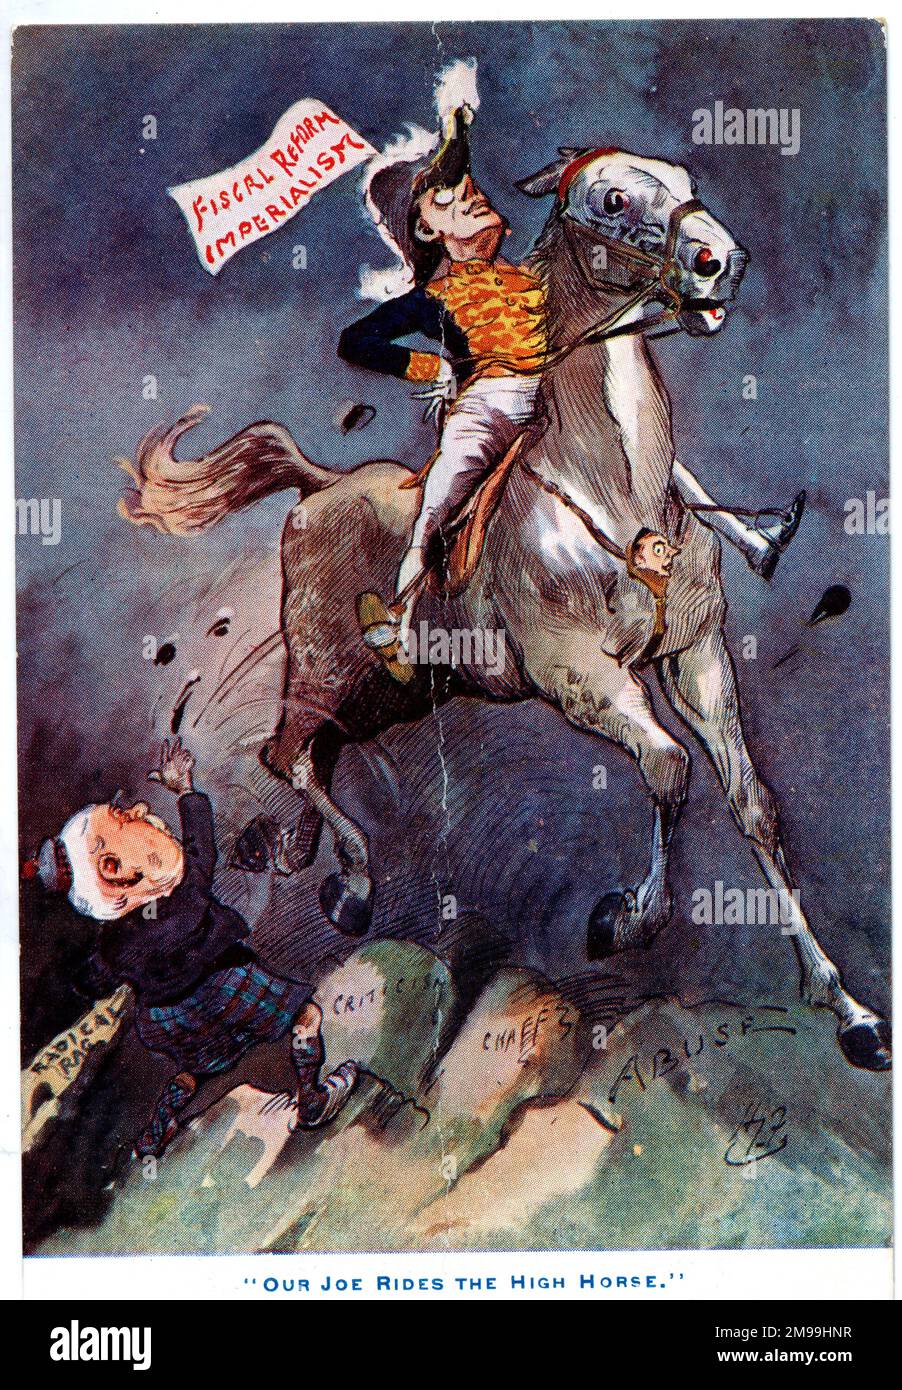 Cartone animato, il nostro Joe cavalca il cavallo alto, mostrando Joseph Chamberlain che batte la bandiera per l'imperialismo e la riforma fiscale, calpestando il suo avversario politico Campbell-Bannerman. Foto Stock